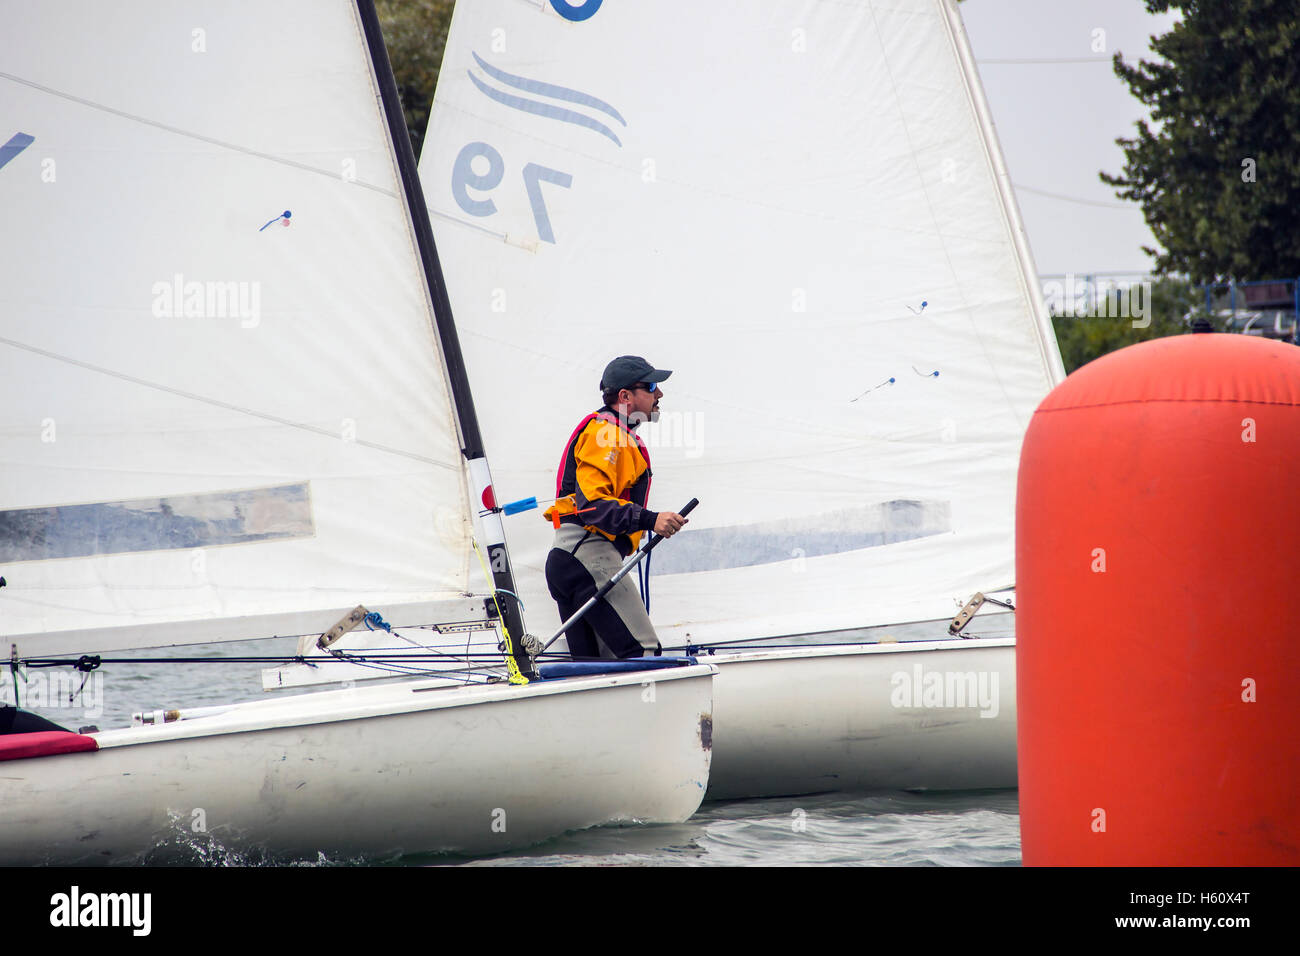 Belgrado Finn Cap 2016, Serbia - Boris Adjanski nella classe Finn barca a vela partecipa a uno dei match race regate Foto Stock